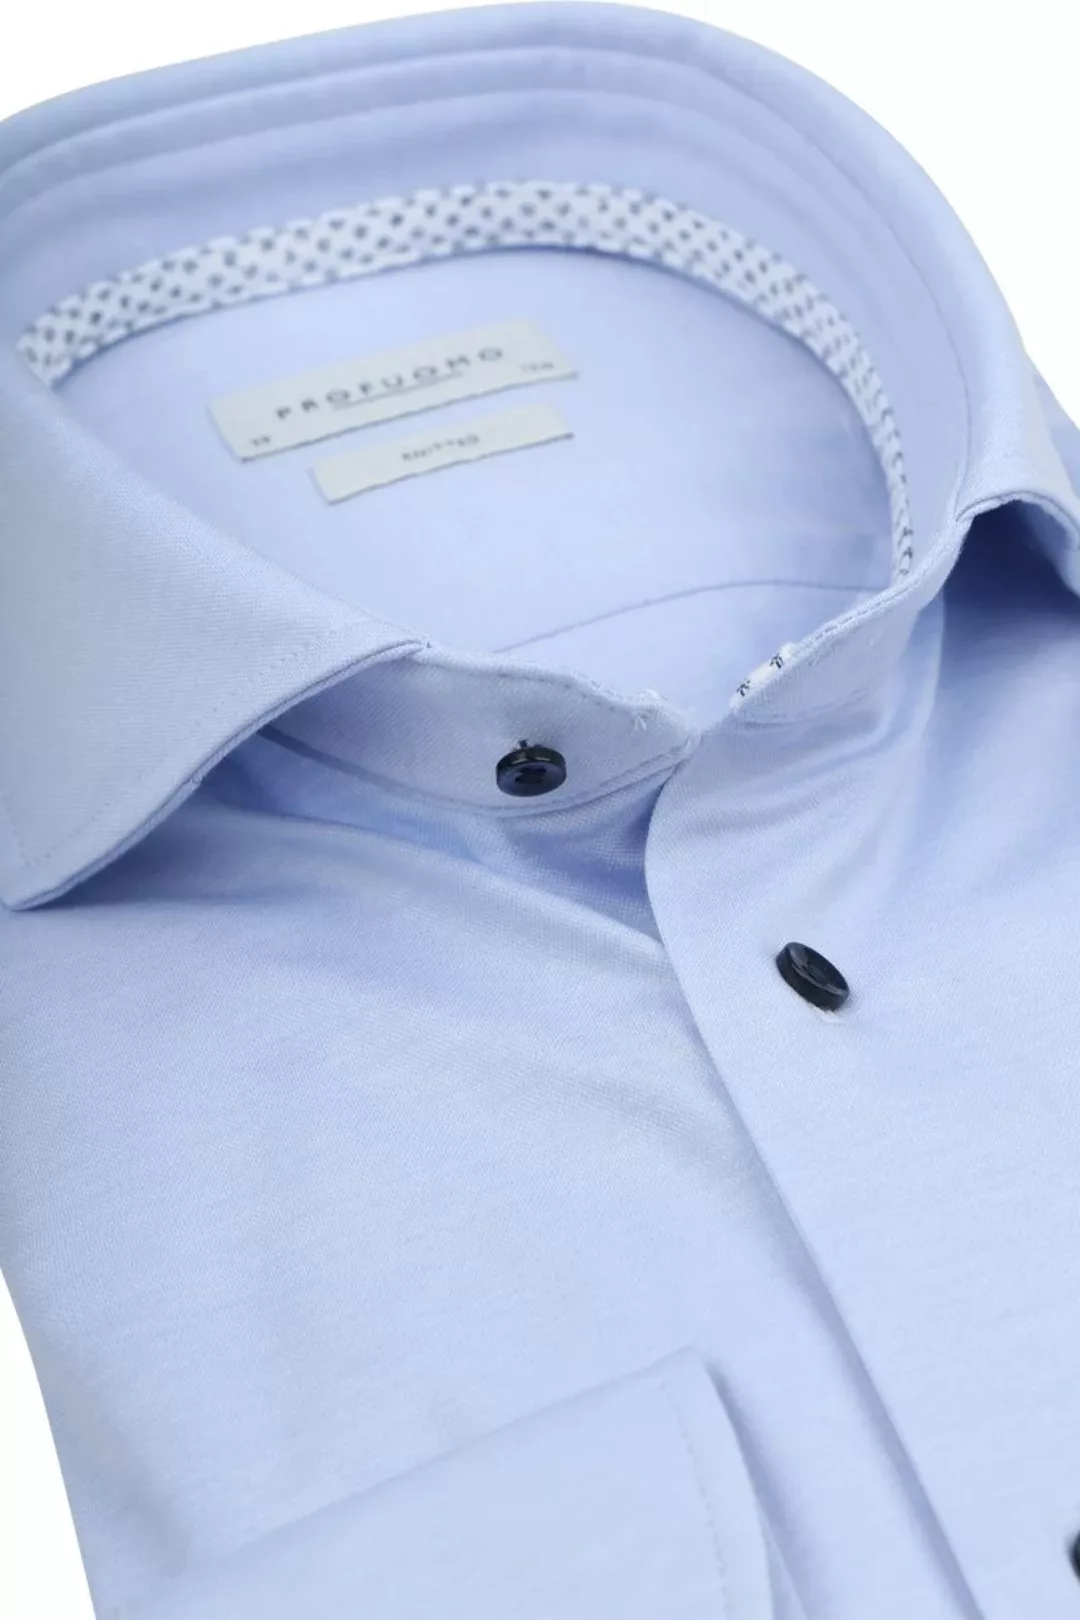 Profuomo Hemd Knitted Slim Fit Hellblau Melange - Größe 38 günstig online kaufen